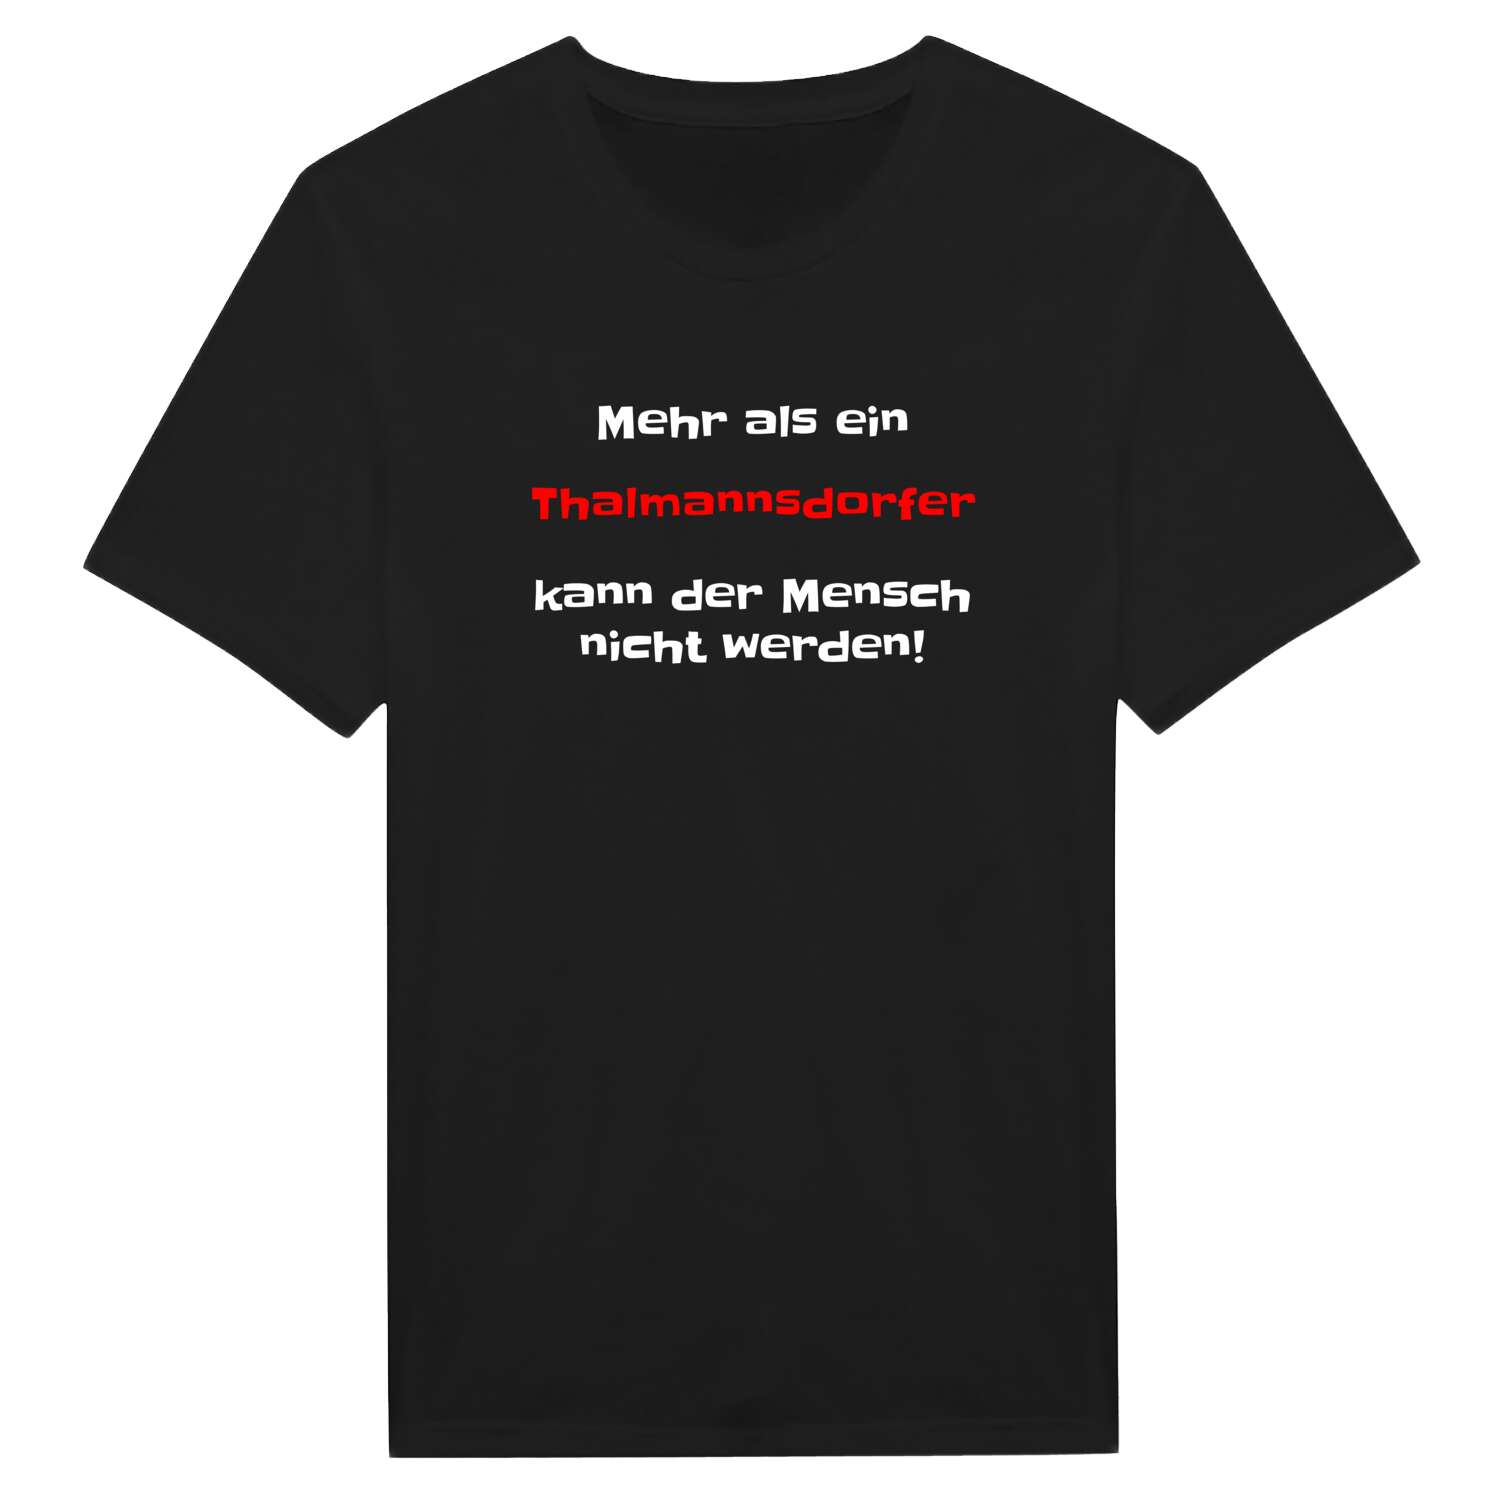 Thalmannsdorf T-Shirt »Mehr als ein«